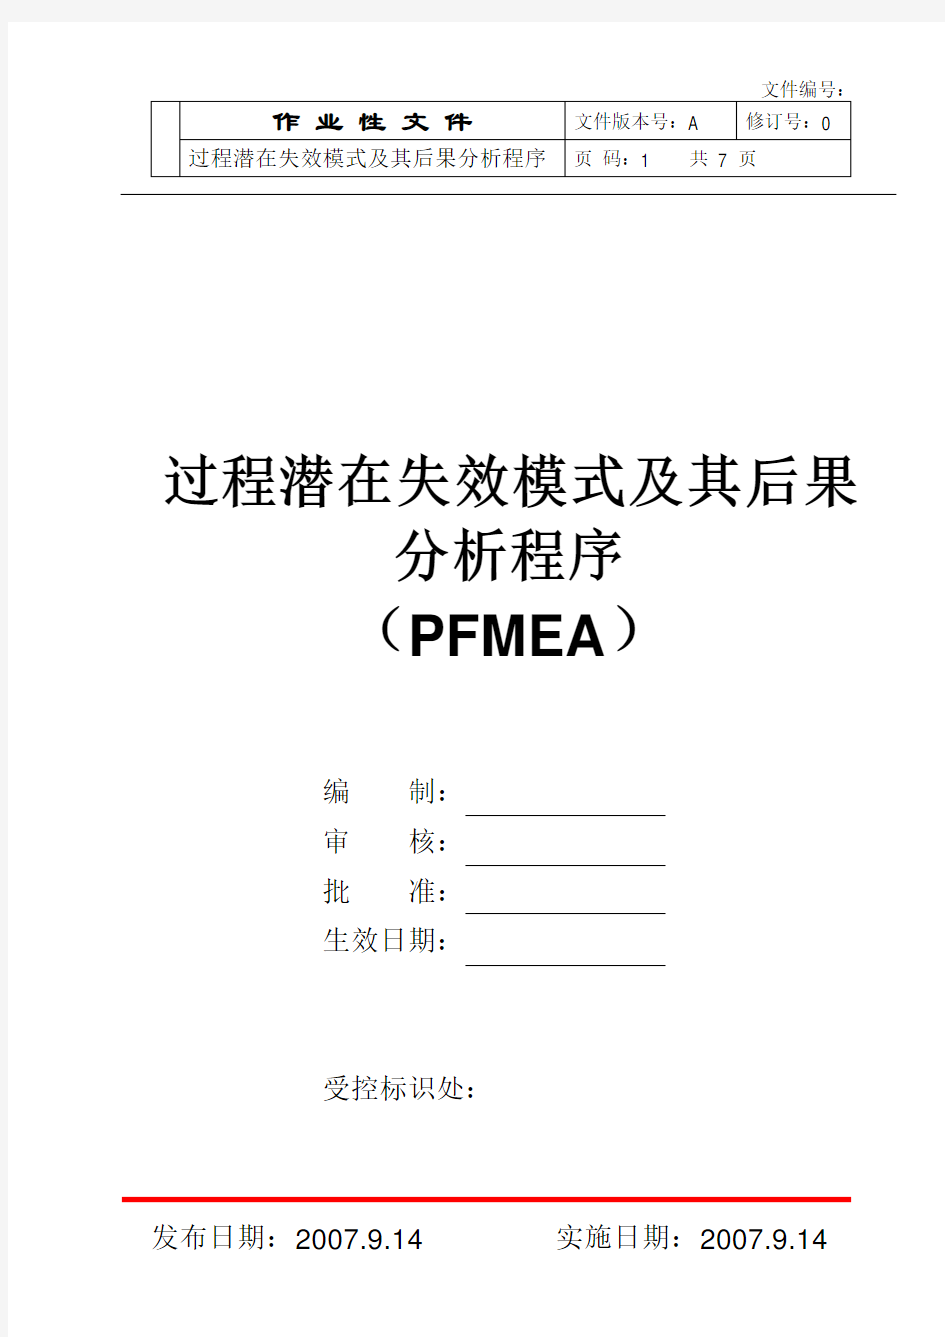 过程潜在失效模式及其后果分析程序(PFMEA)分析